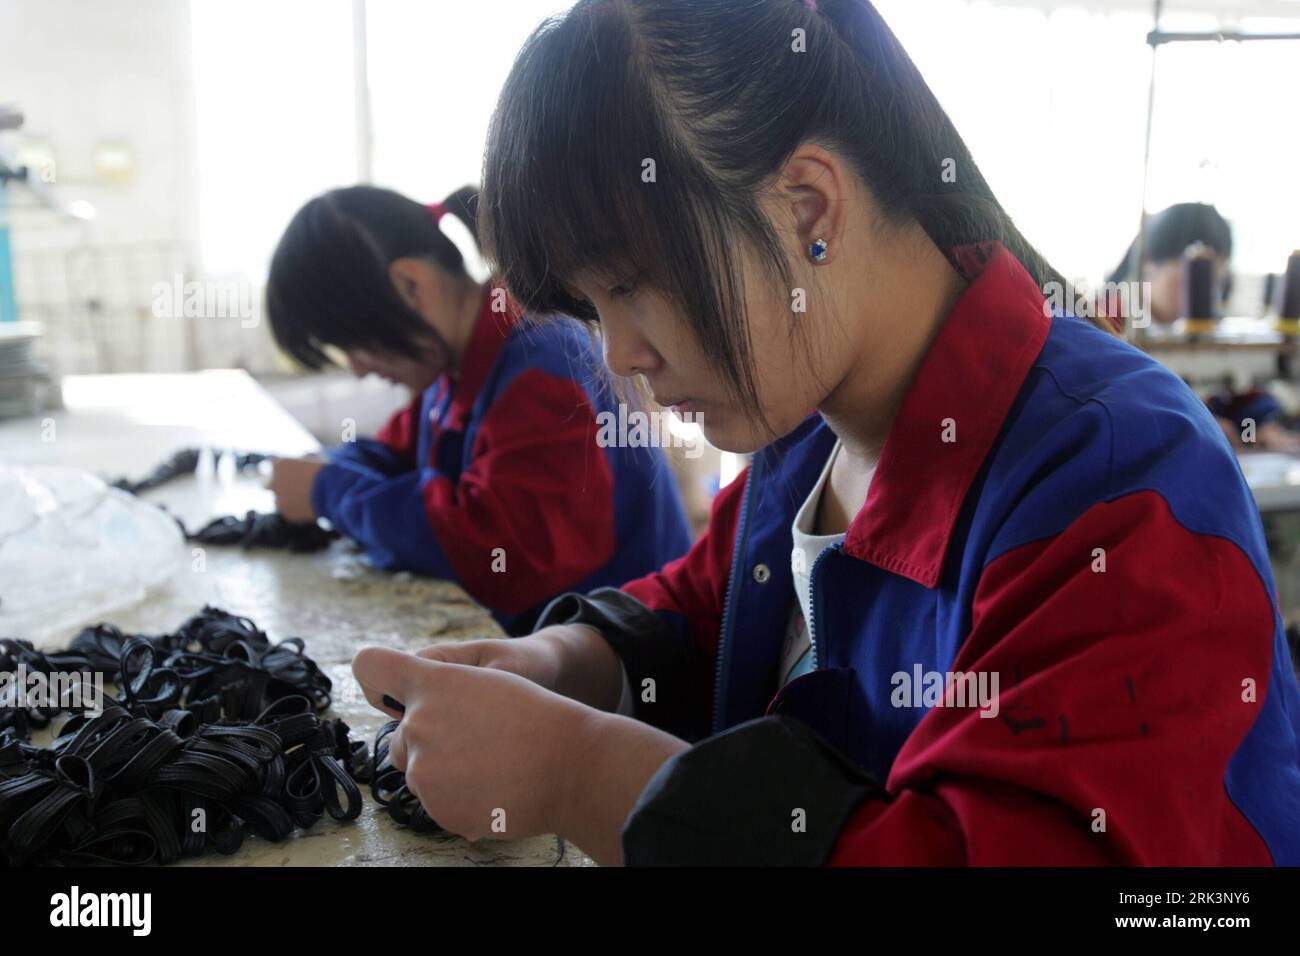 Bildnummer: 53541085 Datum: 17.10.2009 Copyright: imago/Xinhua-Arbeiter stellen in einer Ledertaschenwerkstatt in Baigou, nordchinesische Provinz Hebei, am 17. Oktober 2009 Accessoires für Ledertaschen her. Baigou verliert seinen schlechten Ruf als Stadt der gefälschten Taschen, indem es lokal entworfene Taschen und Koffer mit lokalen Marken fördert. Es gibt über 1400 lokale Marken in Baigou. (Xinhua/Zhai Xi) (2)CHINA-HEBEI-BAIGOU-BAGS (CN) PUBLICATIONxNOTxINxCHN Wirtschaft kbdig xmk 2009 quer o0 Textilindustrie Bildnummer 53541085 Datum 17 10 2009 Copyright Imago XINHUA Workers Make Accessories for Leat Stockfoto